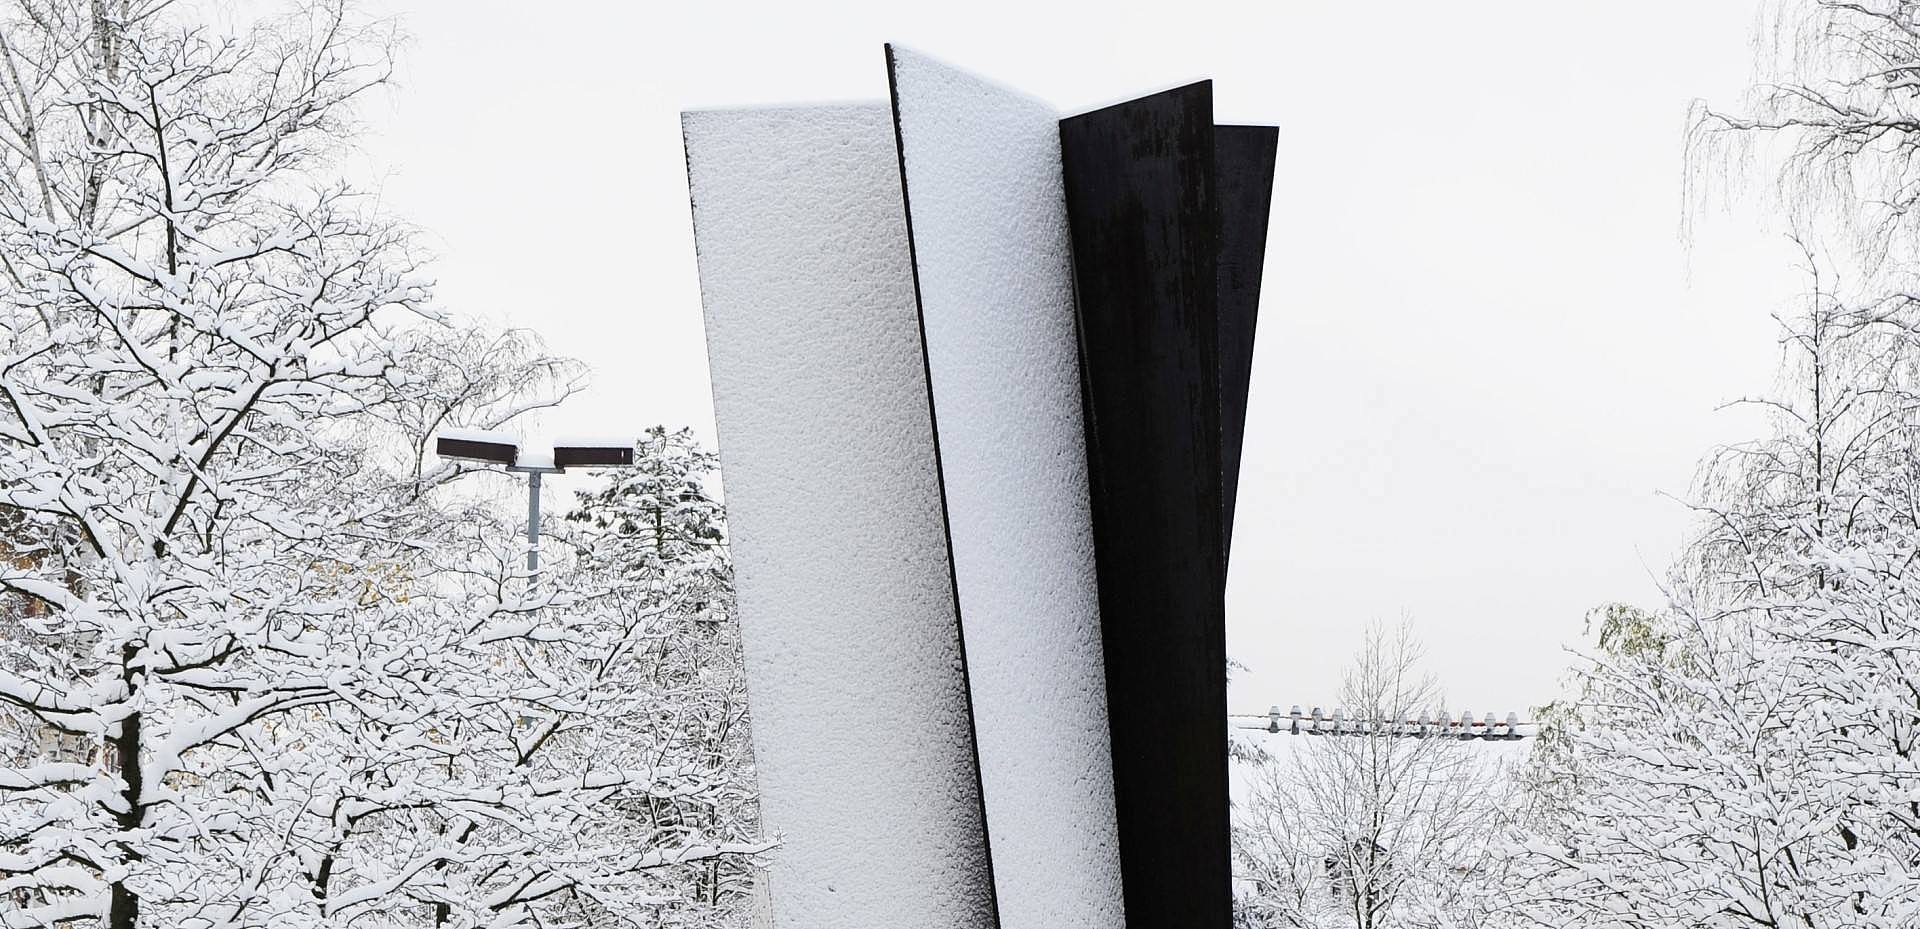 Die Stahlskulptur "Torque" im Schnee